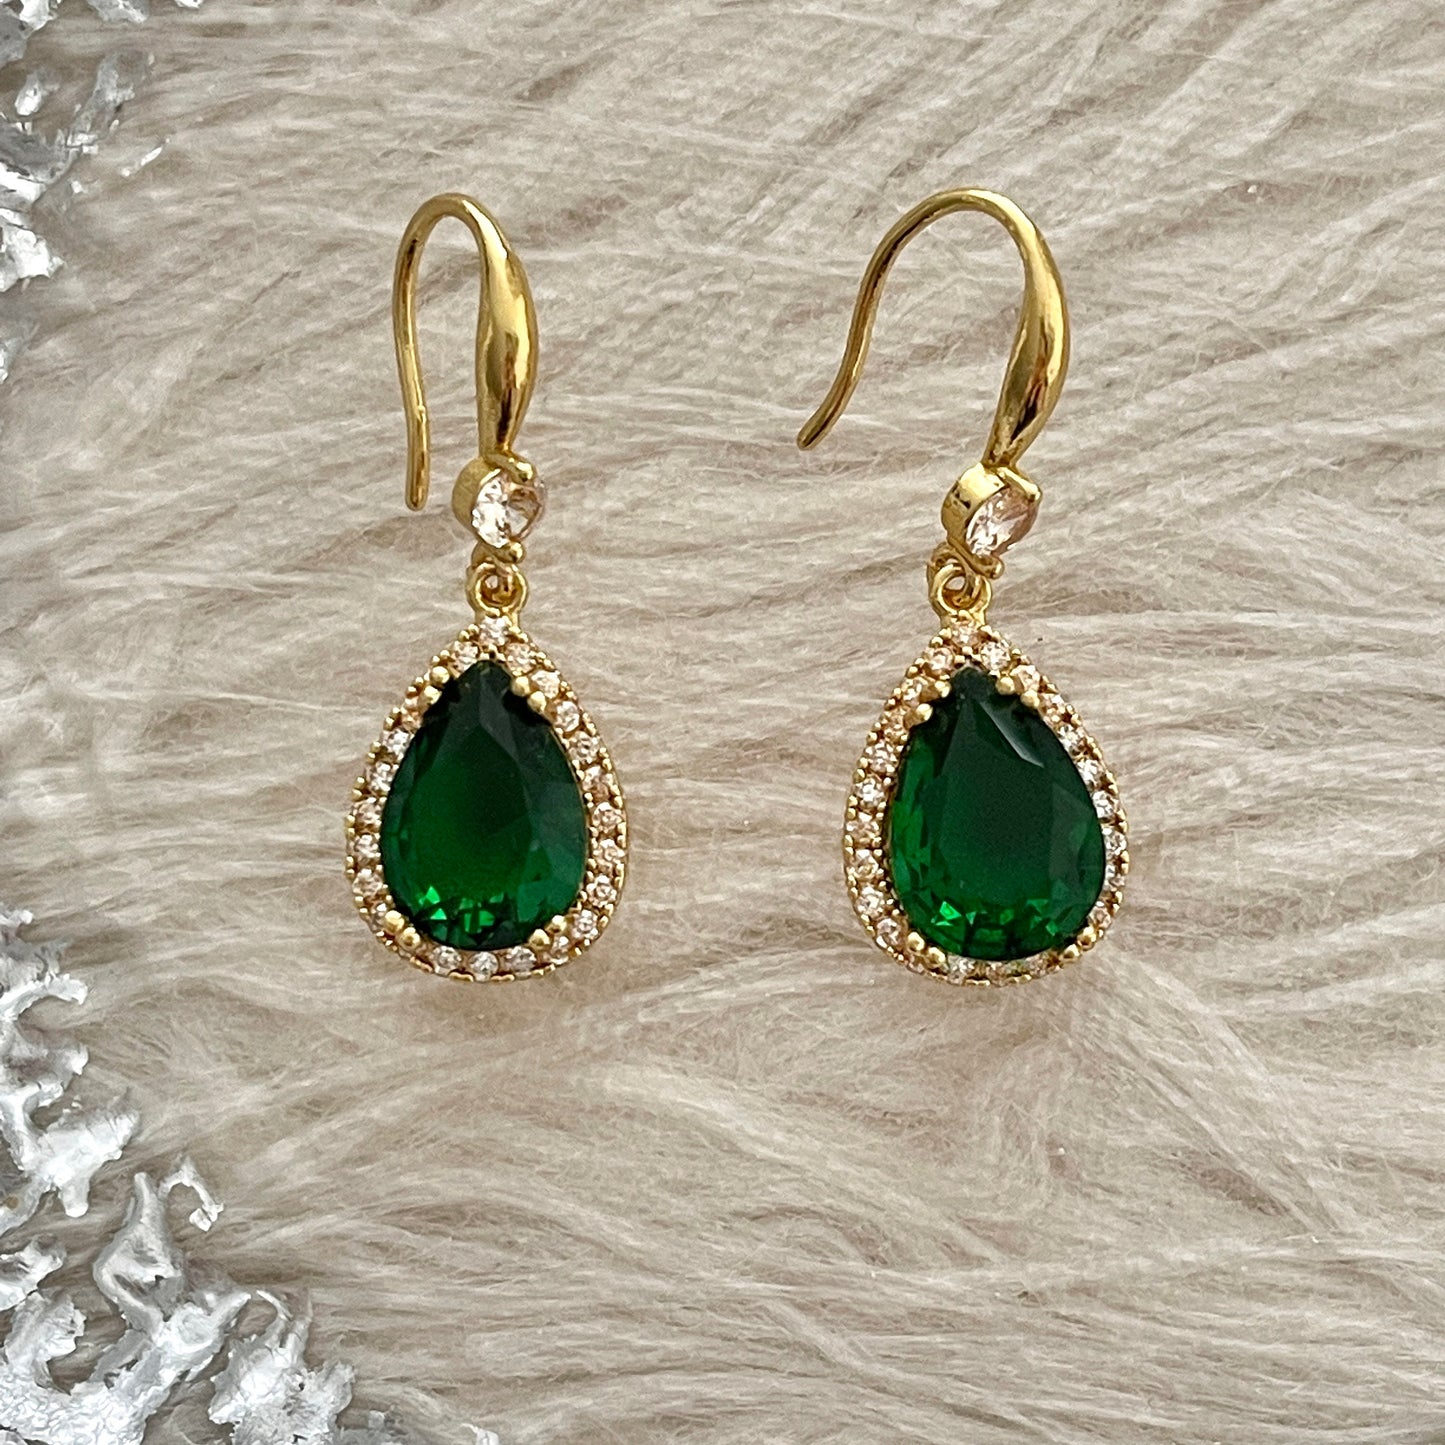 Emerald teardrop earrings, Gold Emerald dangle drop earrings, Emerald green earrings, Gold lace earrings, Handmade vintage style earrings